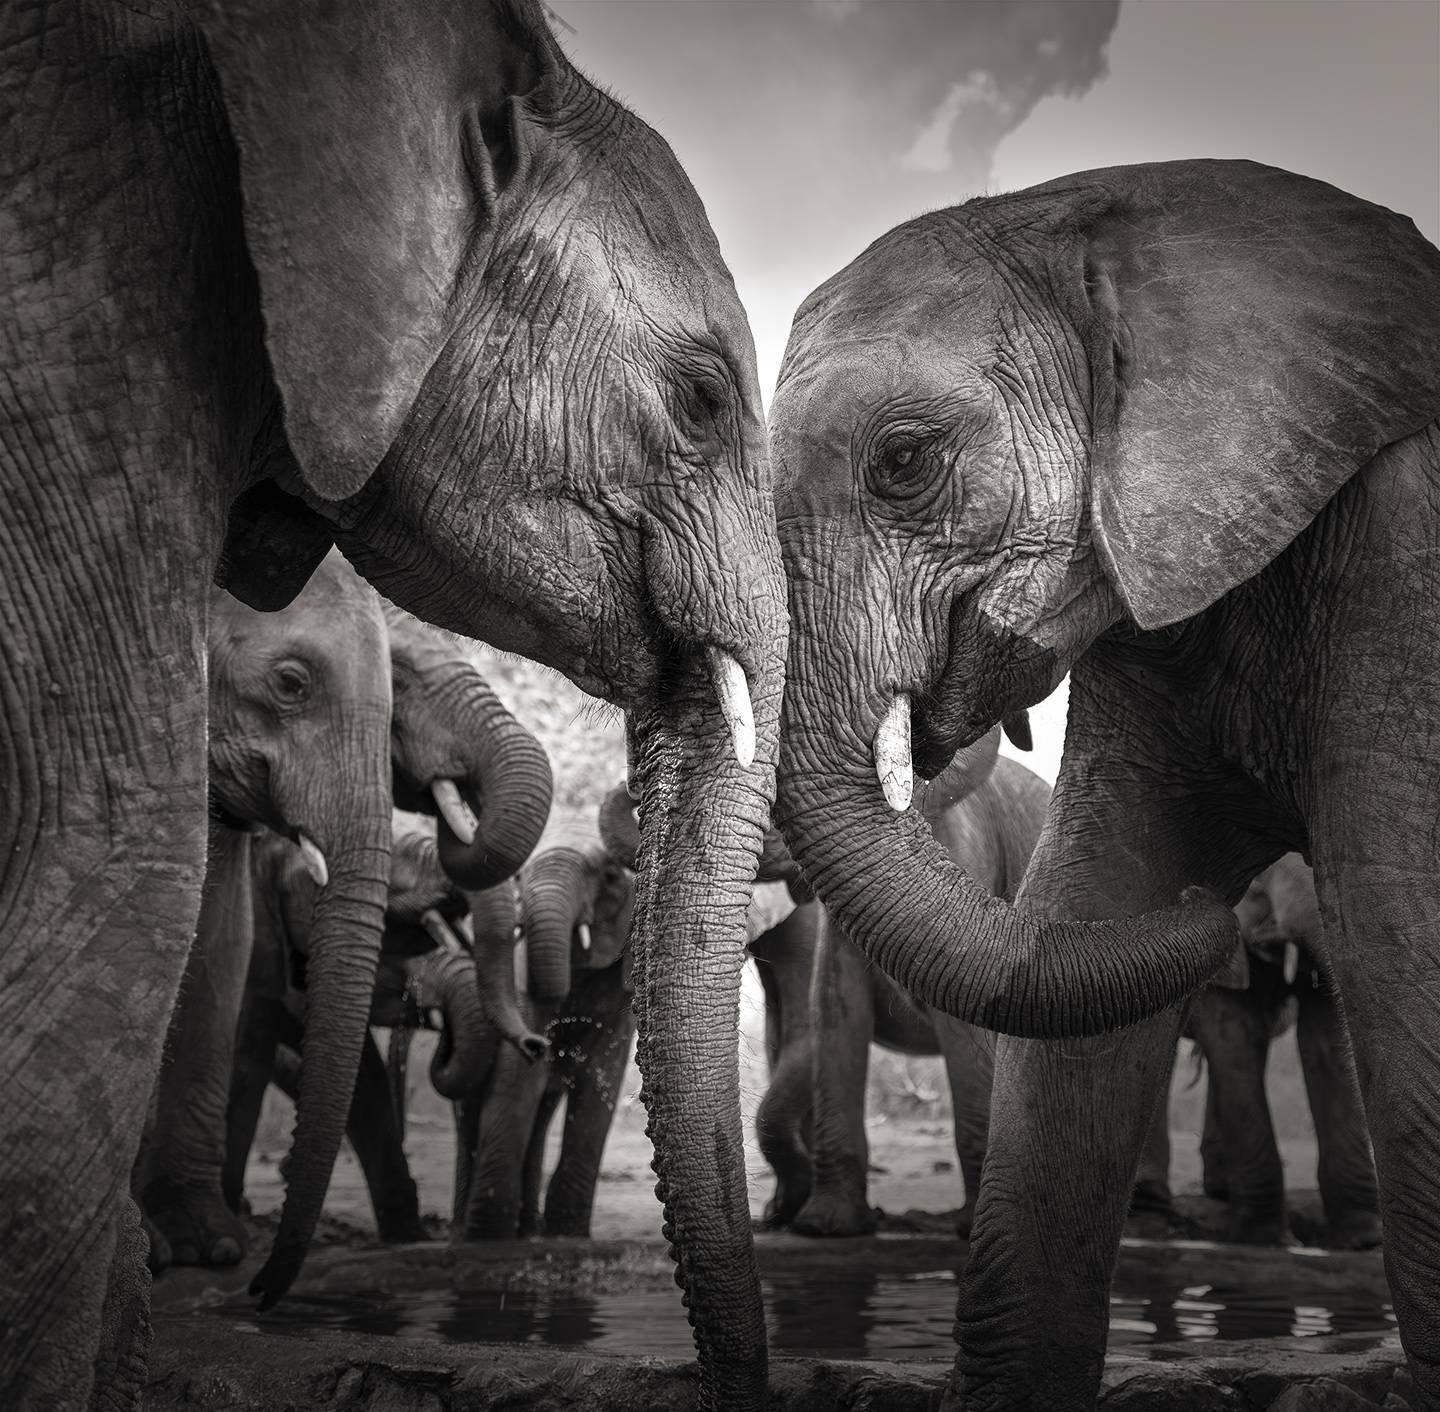 Joachim Schmeisser Black and White Photograph – Am Wasserloch II, Tier, Tierwelt, Schwarz-Weiß-Fotografie, Elefant